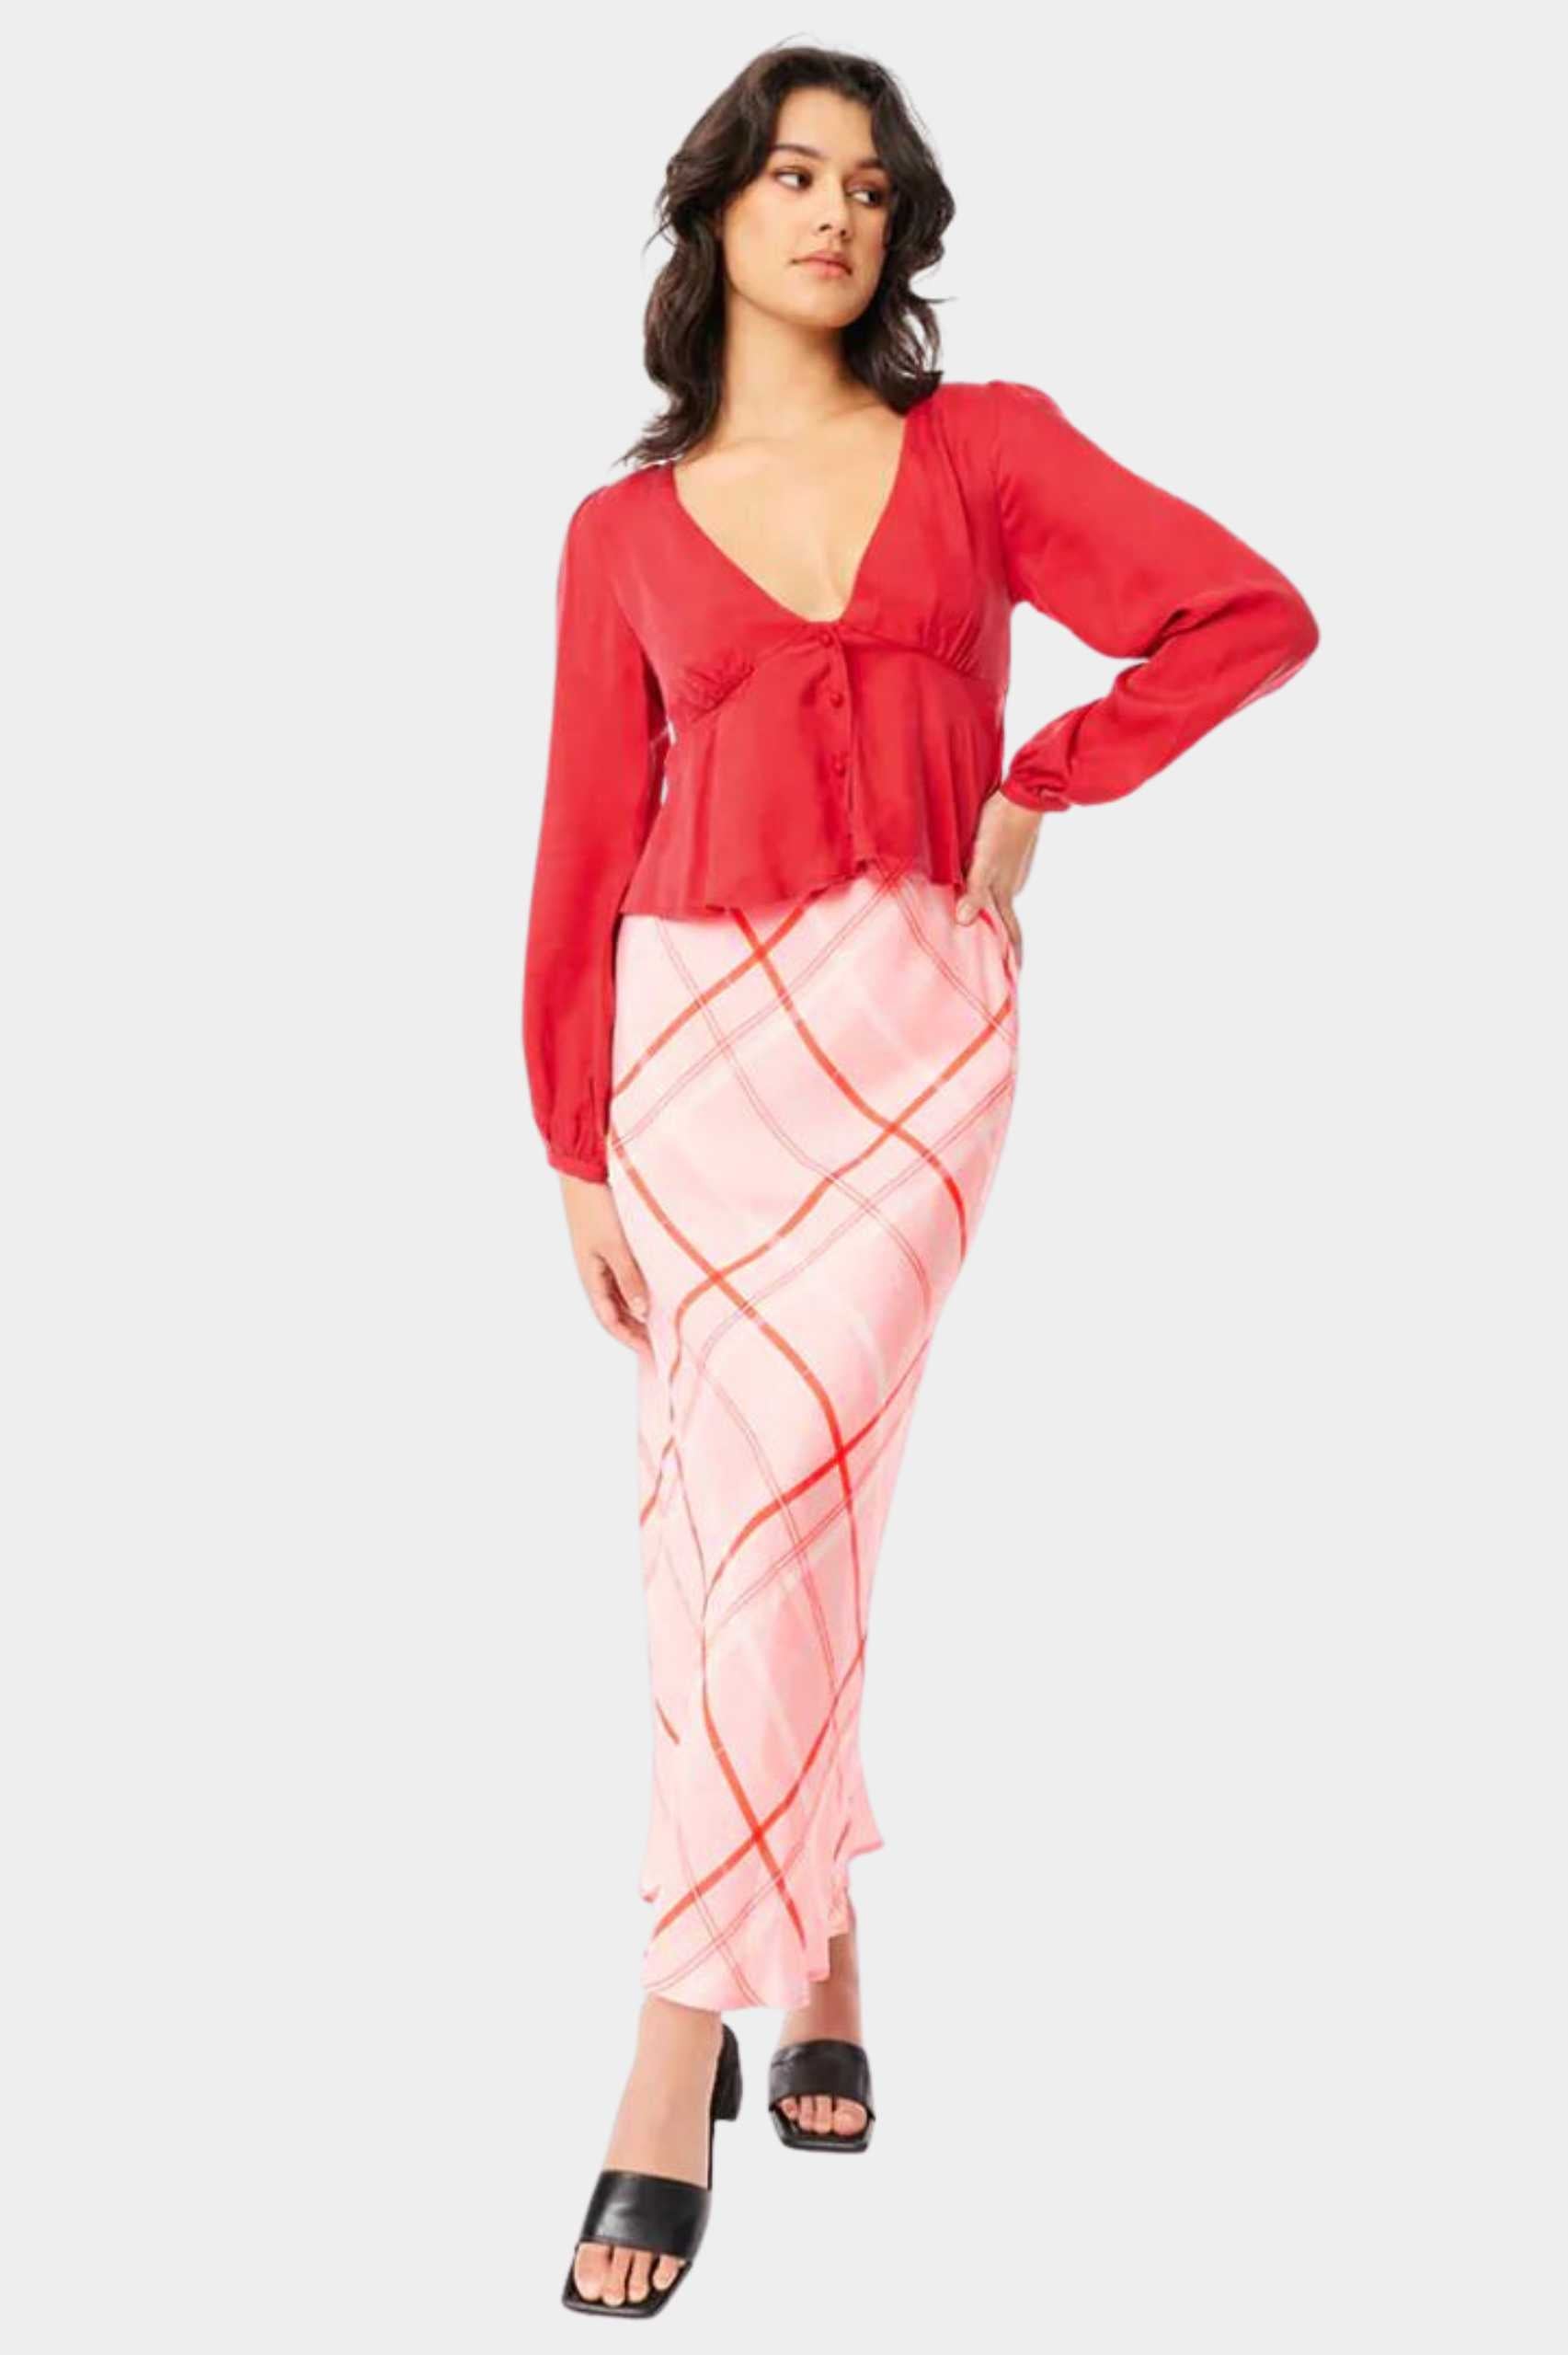 Huffer Mimi Lila Midi Skirt in Pink/Scarlet